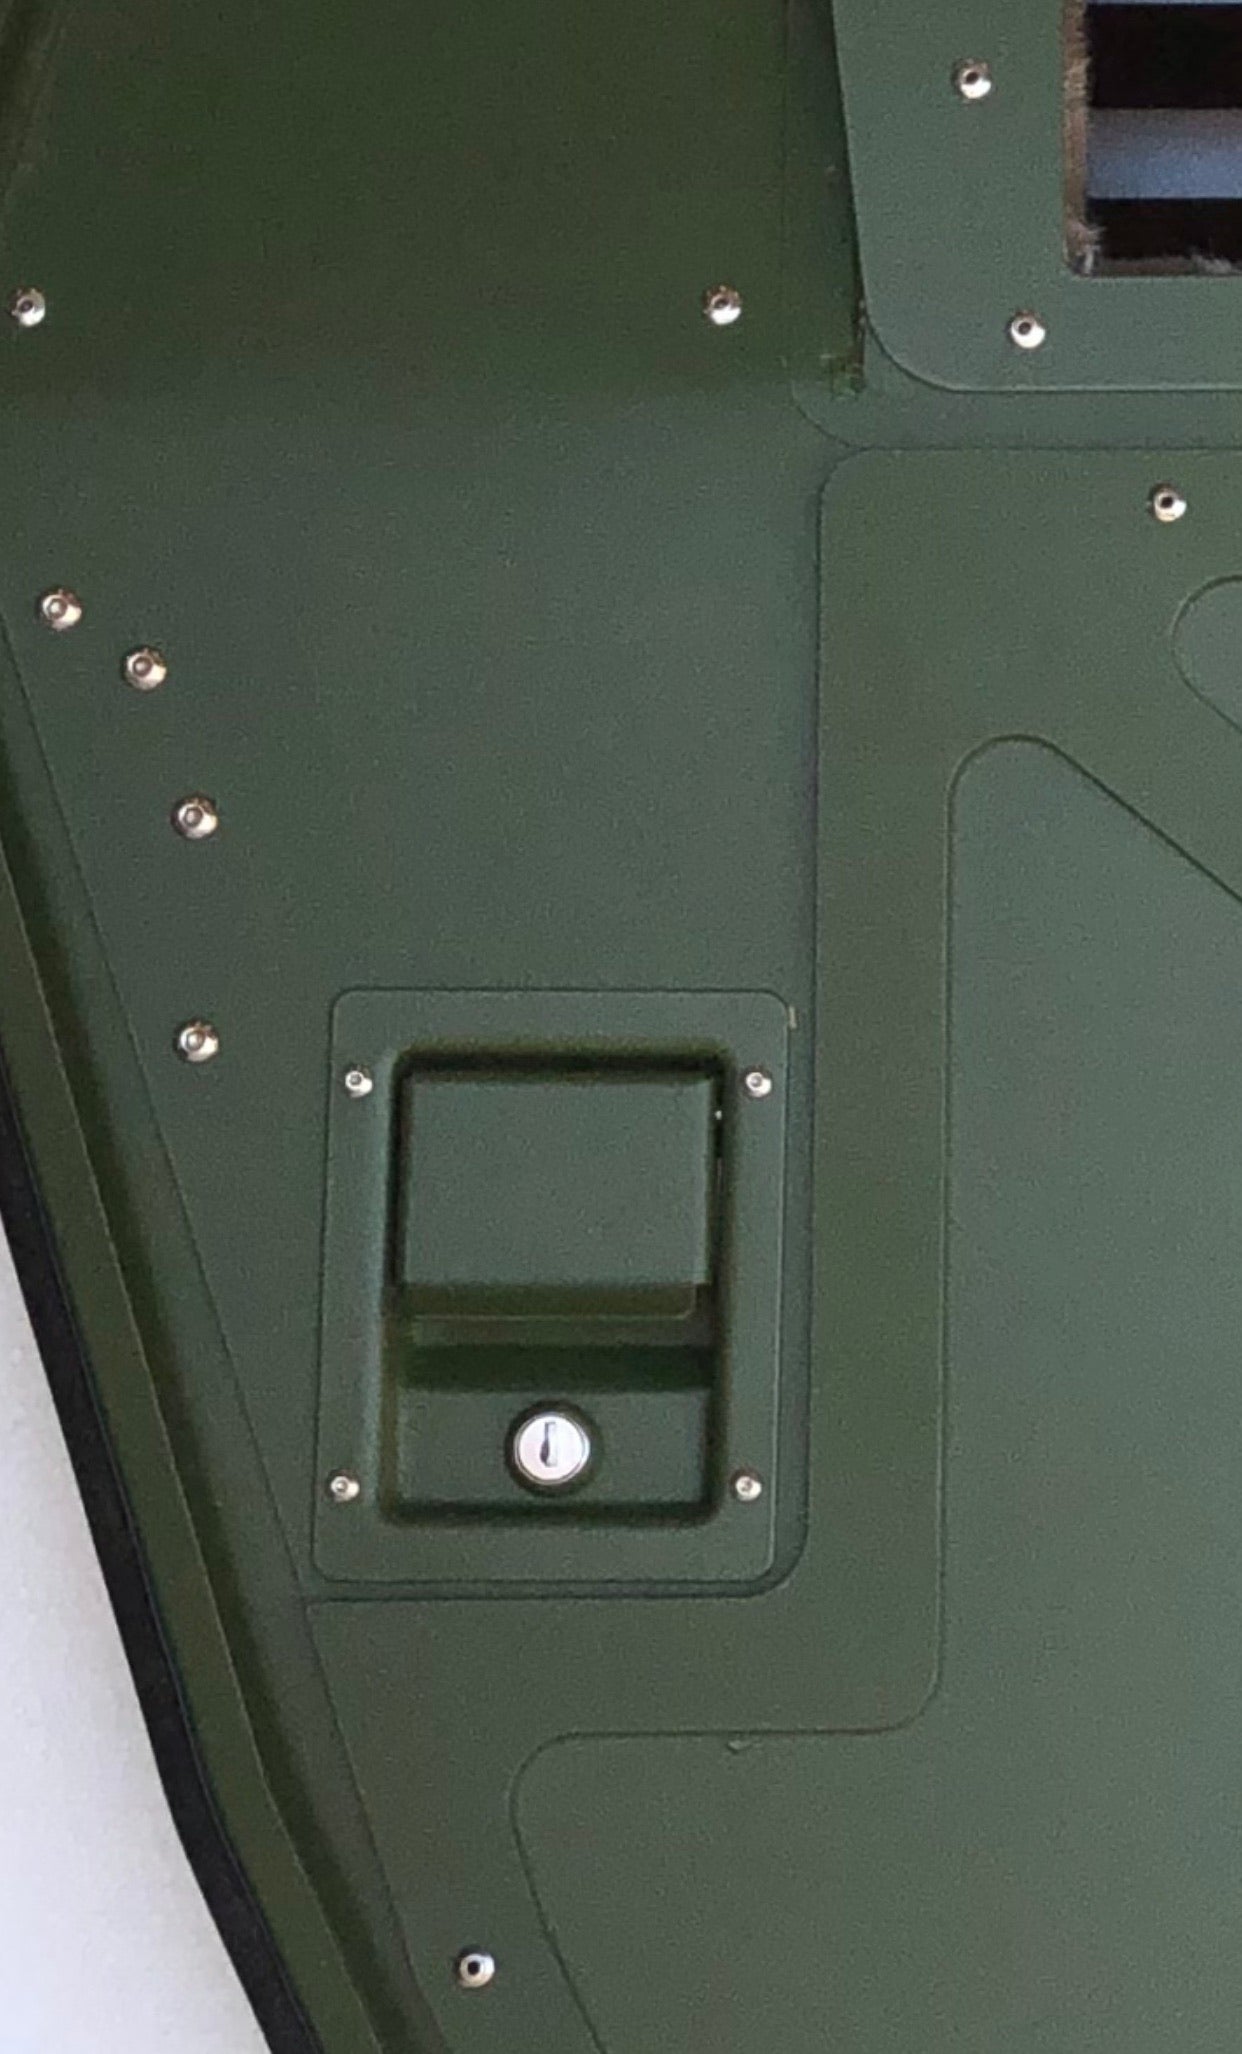 Poignée de porte Loquet Extérieur Verrouillage simple - Humvee- Choix de couleur - 1, 2 ou 4